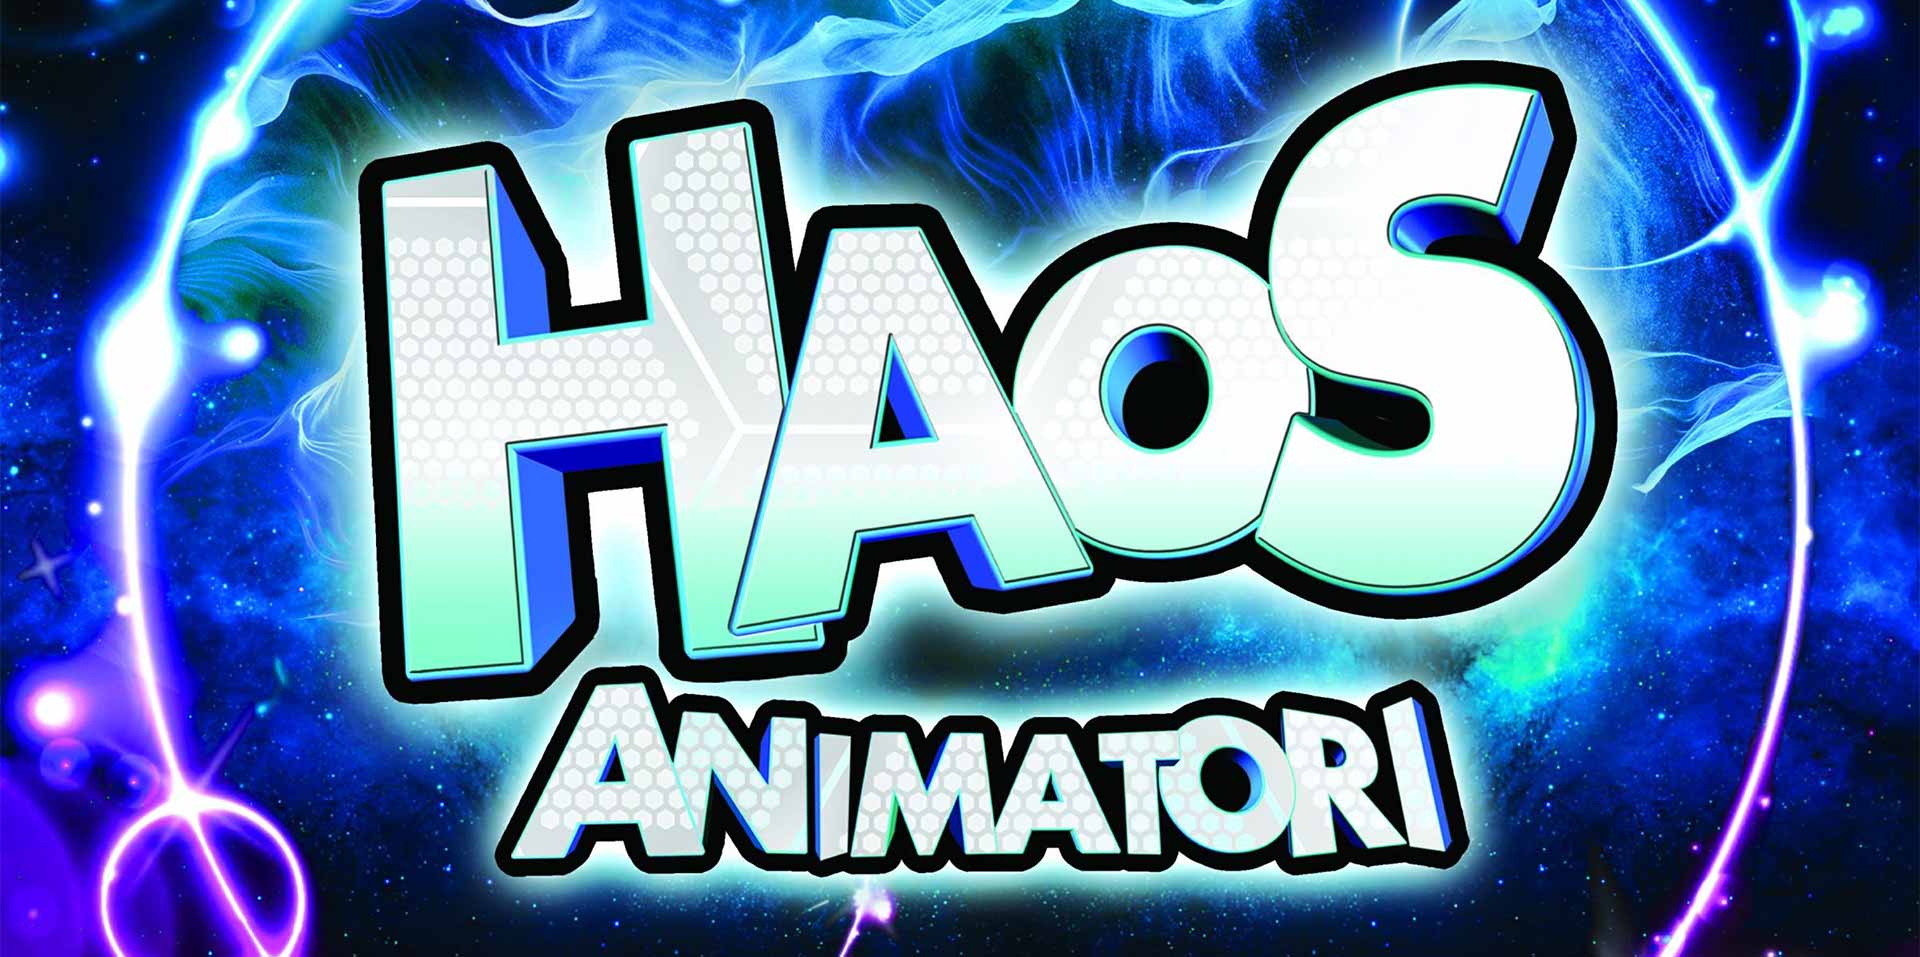 Animacija: Haos, Animatori          